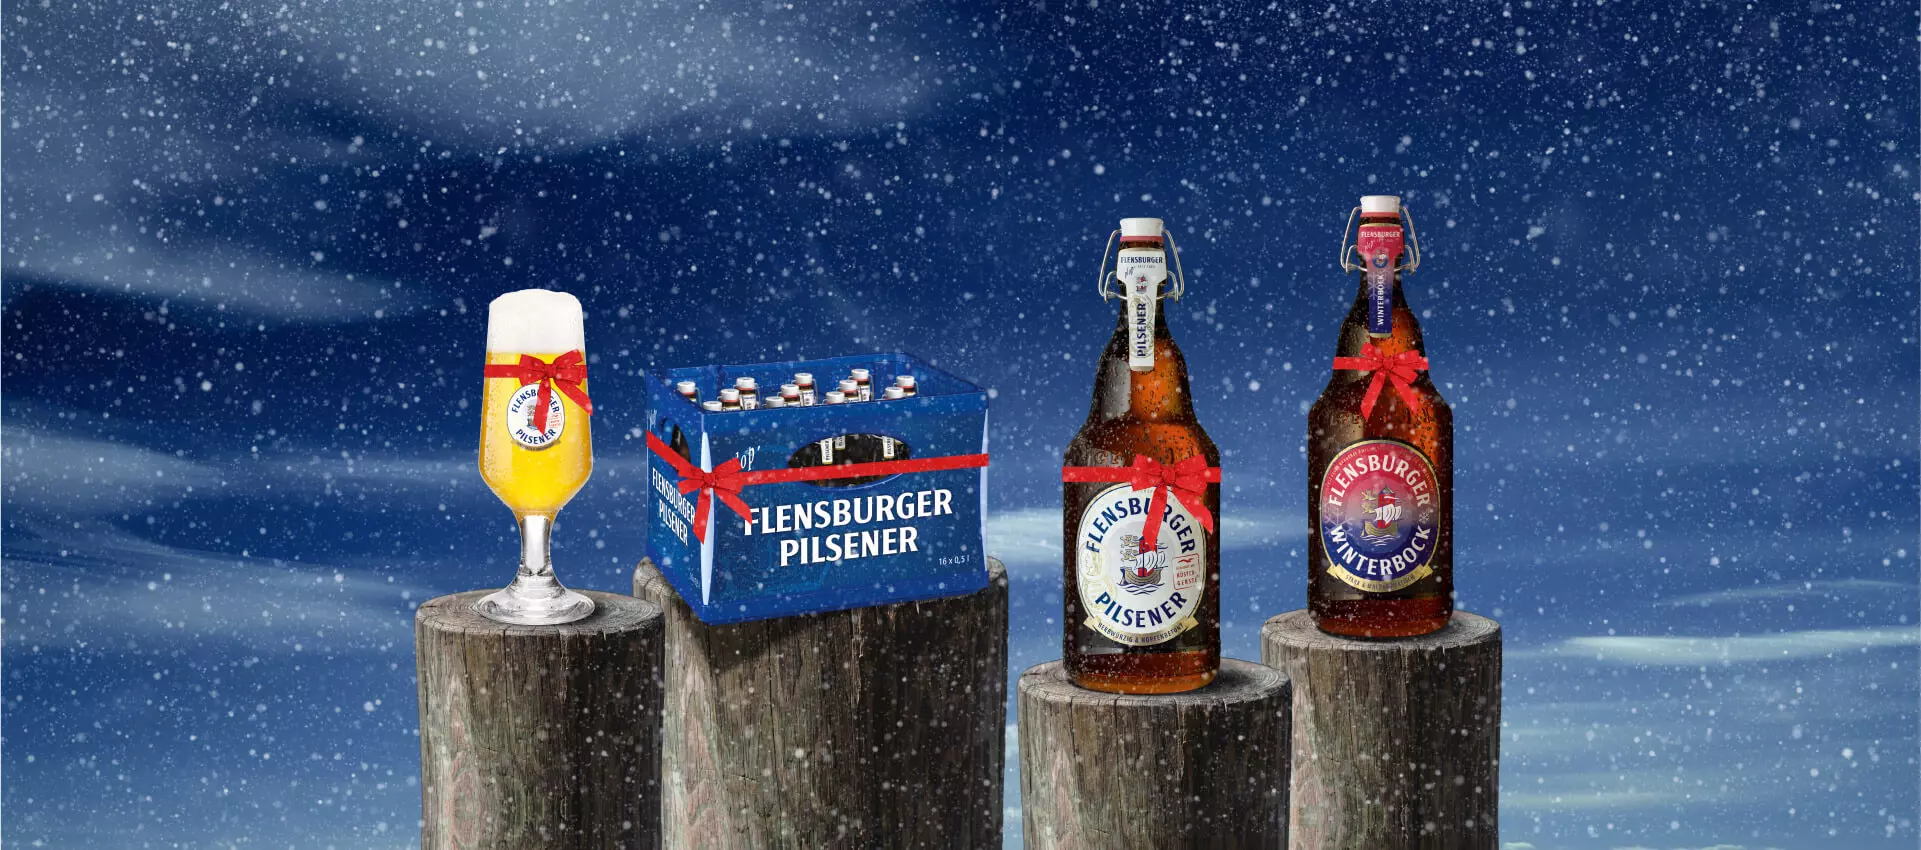 Bierglas, Mega-Plops von FLENS und eine Kiste Bier auf Holzpollern im Schnee und mit Geschenkeband.